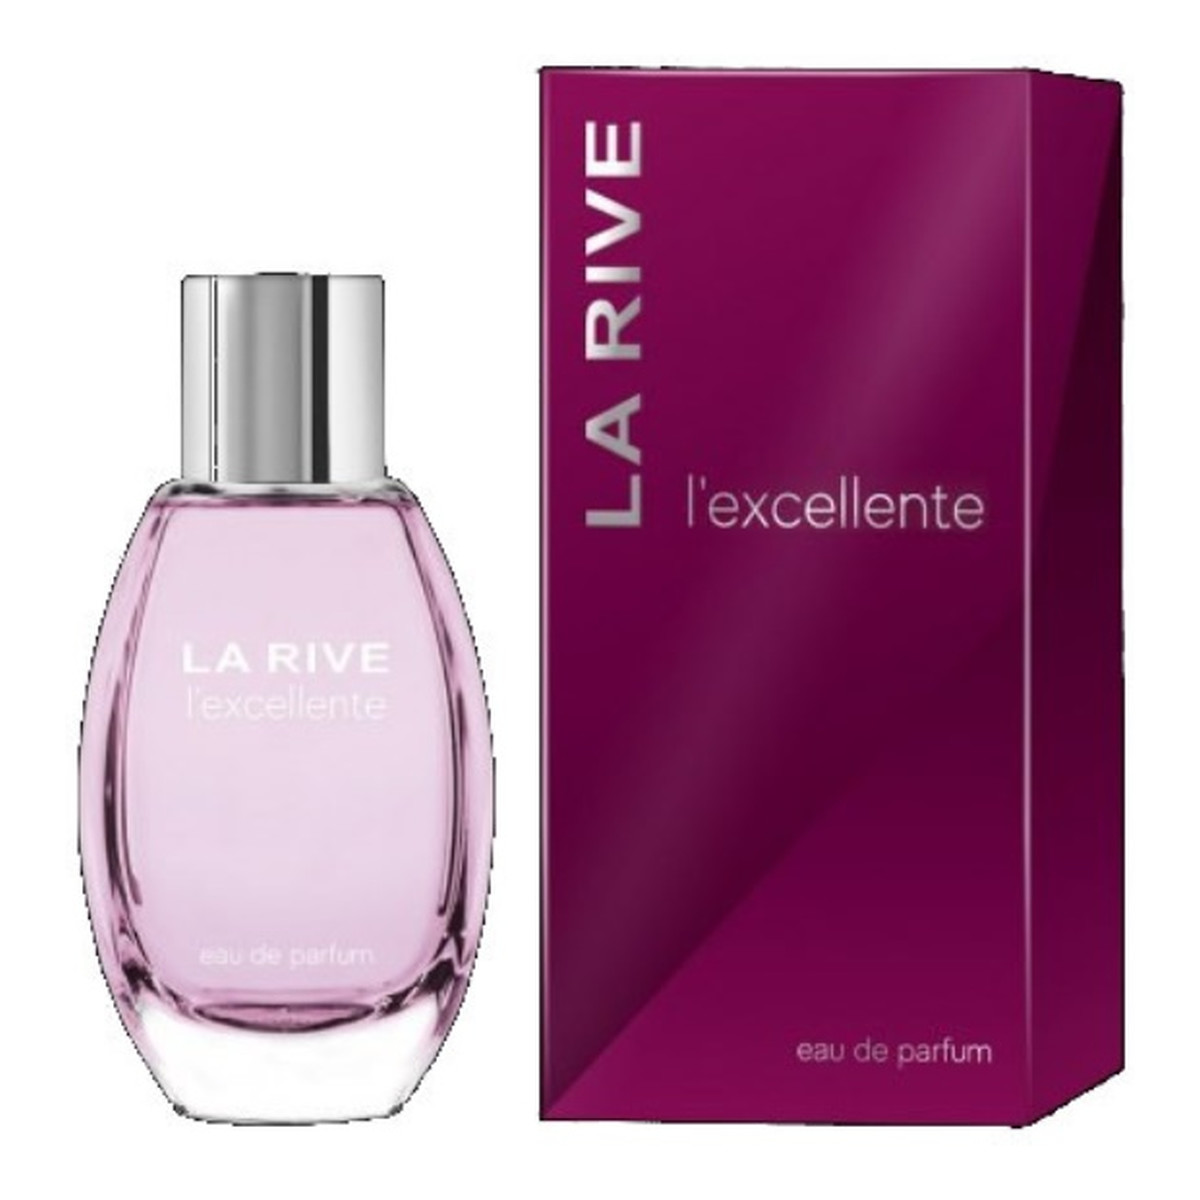 La Rive for Woman L'excellente Woda perfumowana 90ml